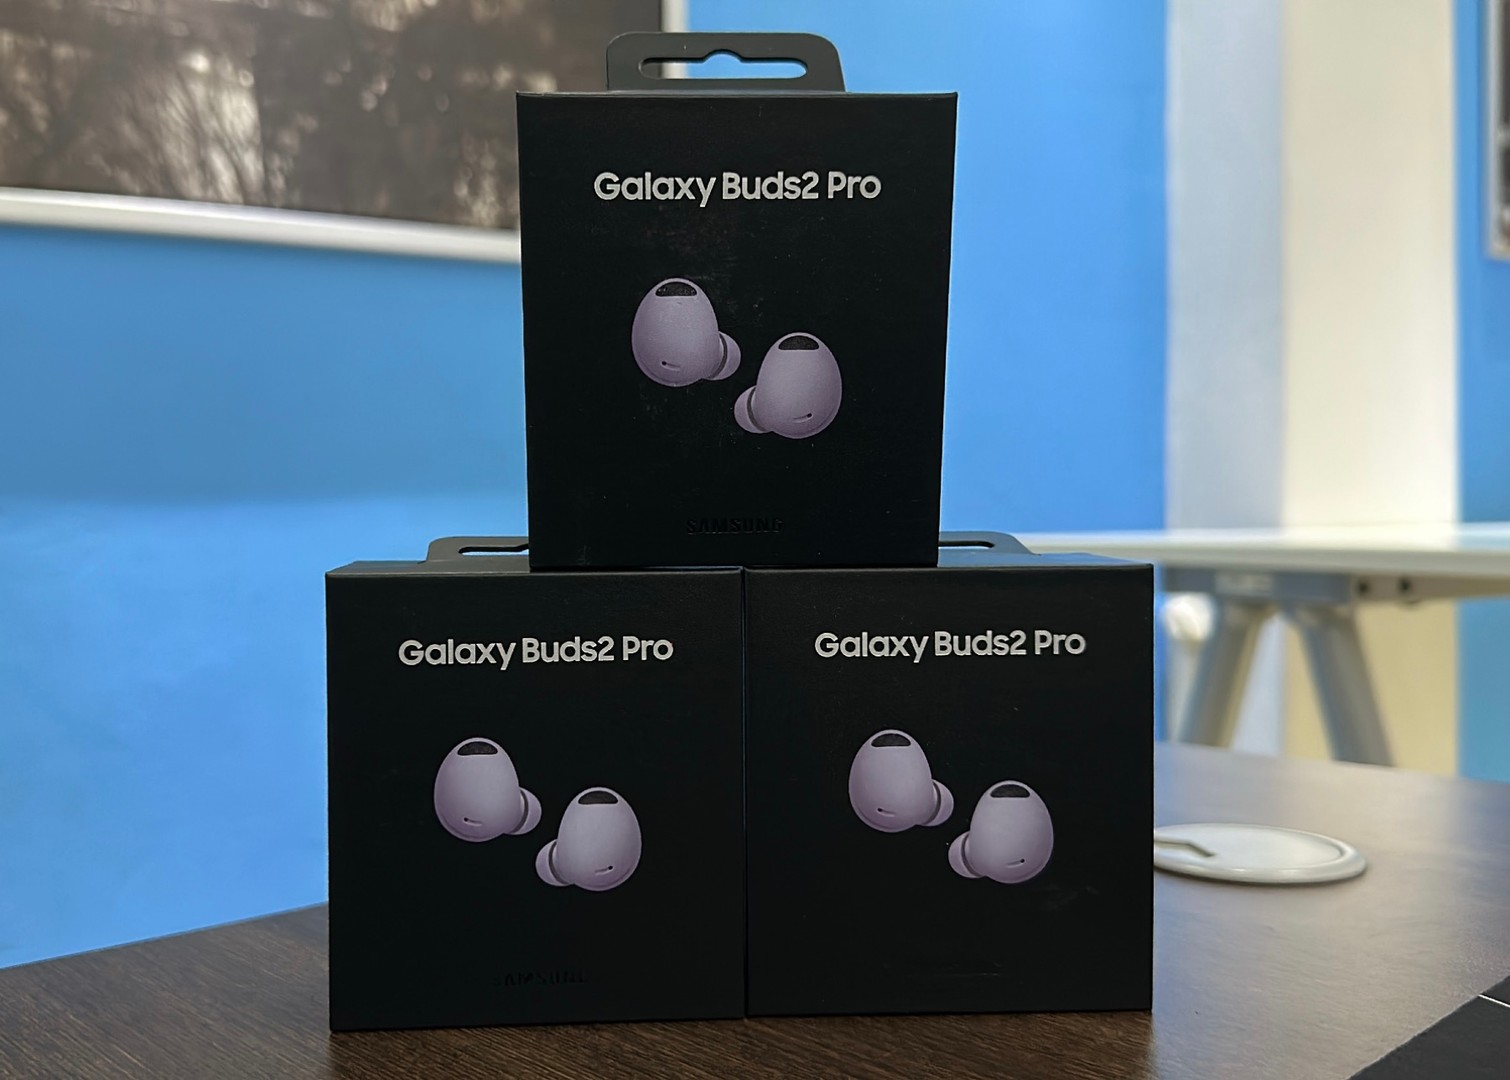 camaras y audio - Vendo Audífonos Galaxy Buds2 Pro Morados Nuevos | Originales , RD$ 9,500 NEG 0